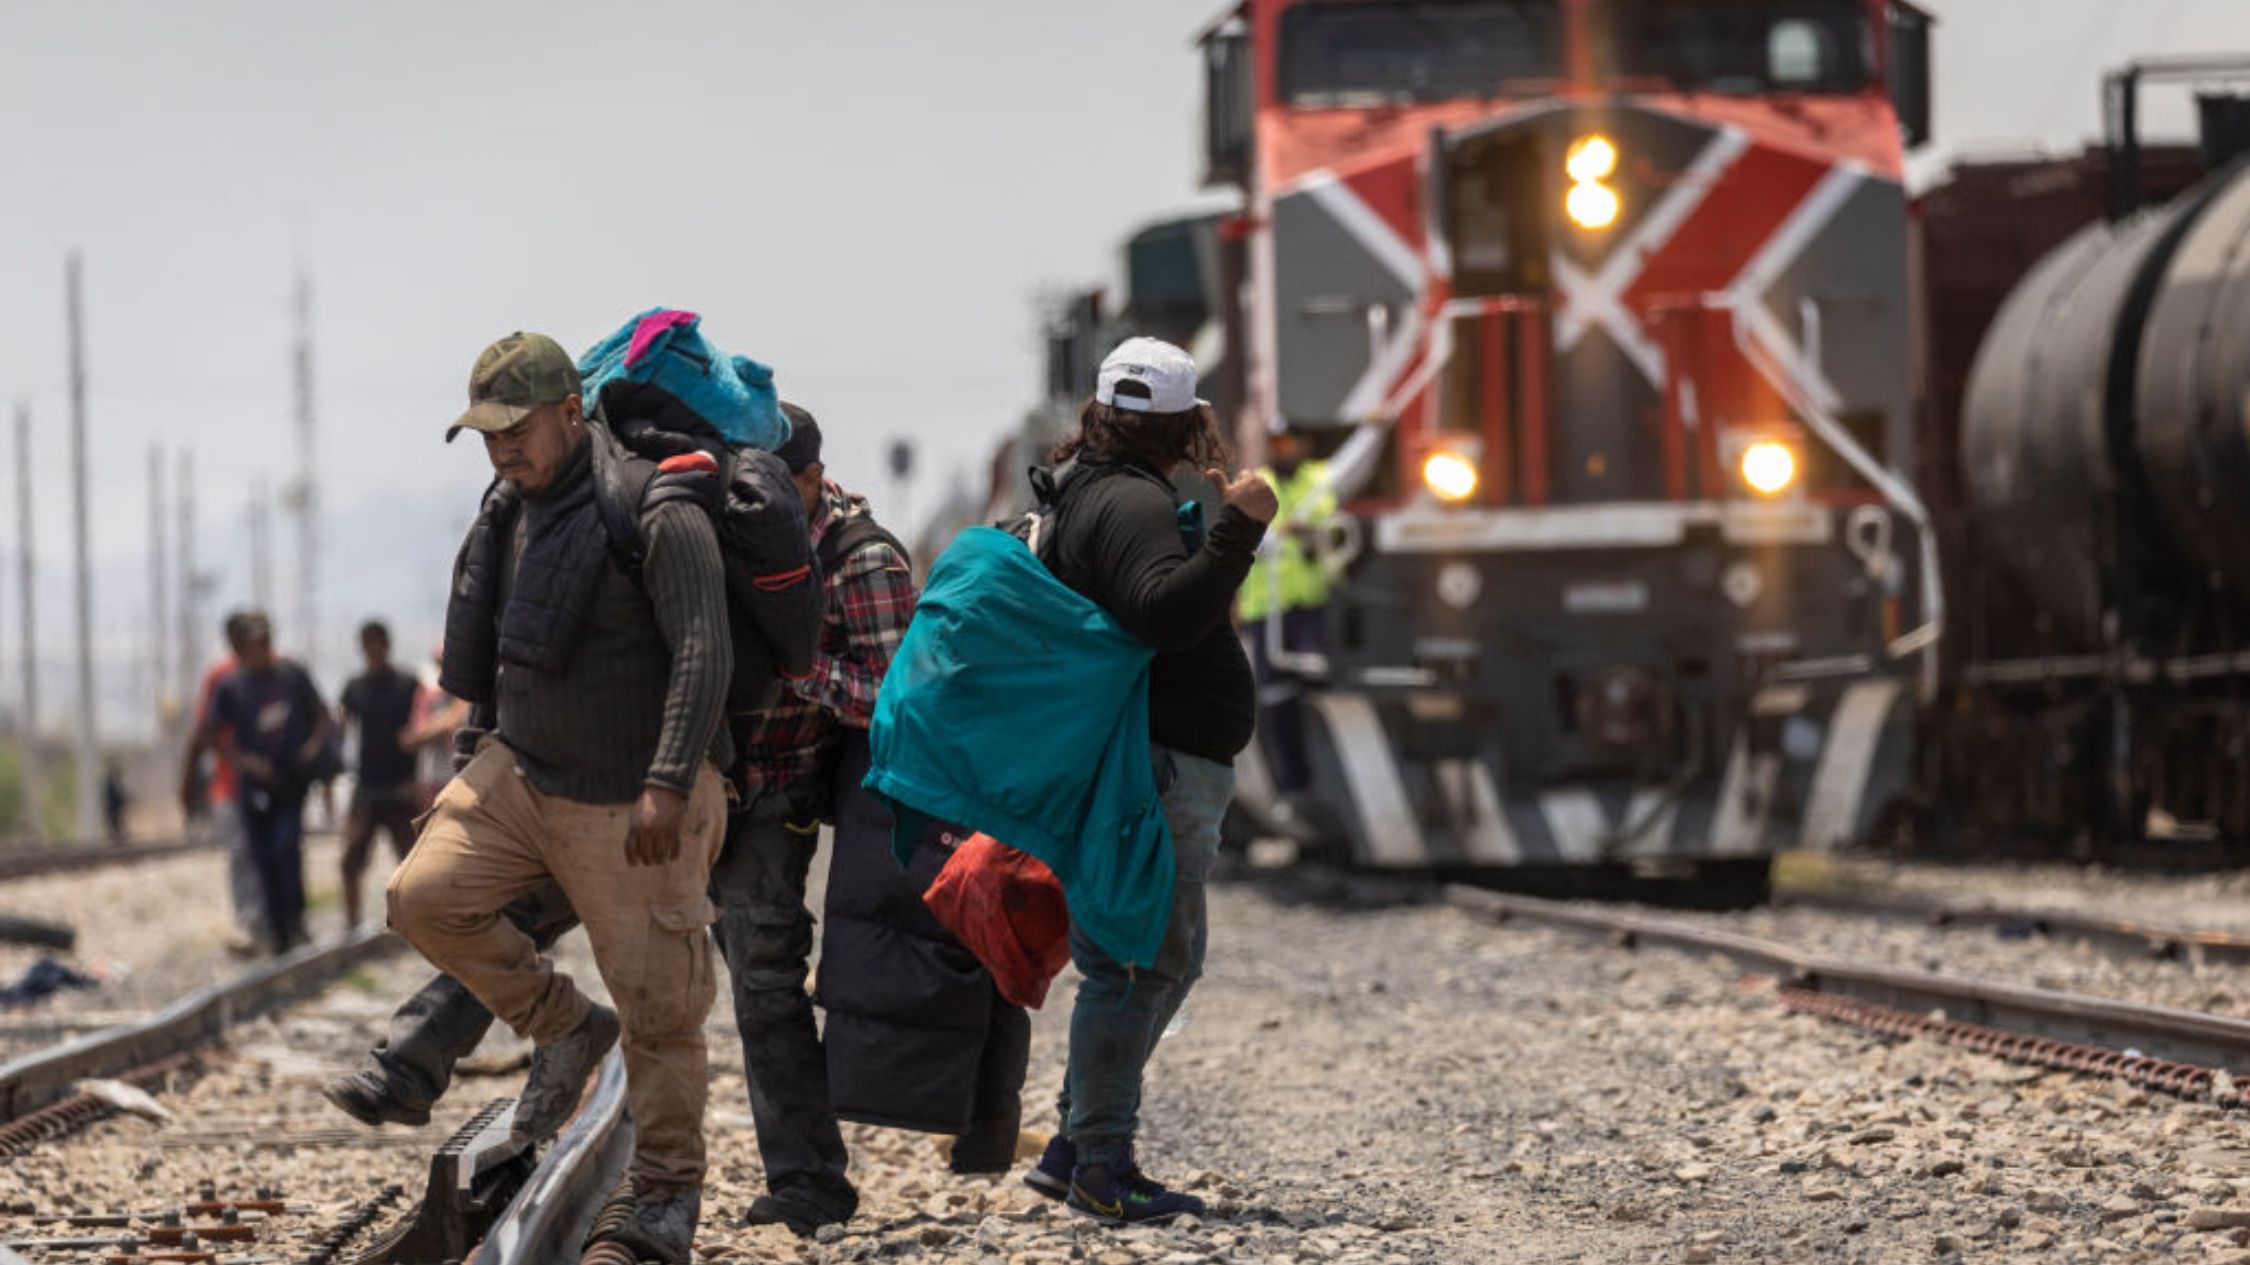 La red de trenes conocida como "La Bestia" suspende operaciones en medio de la crisis de migrantes